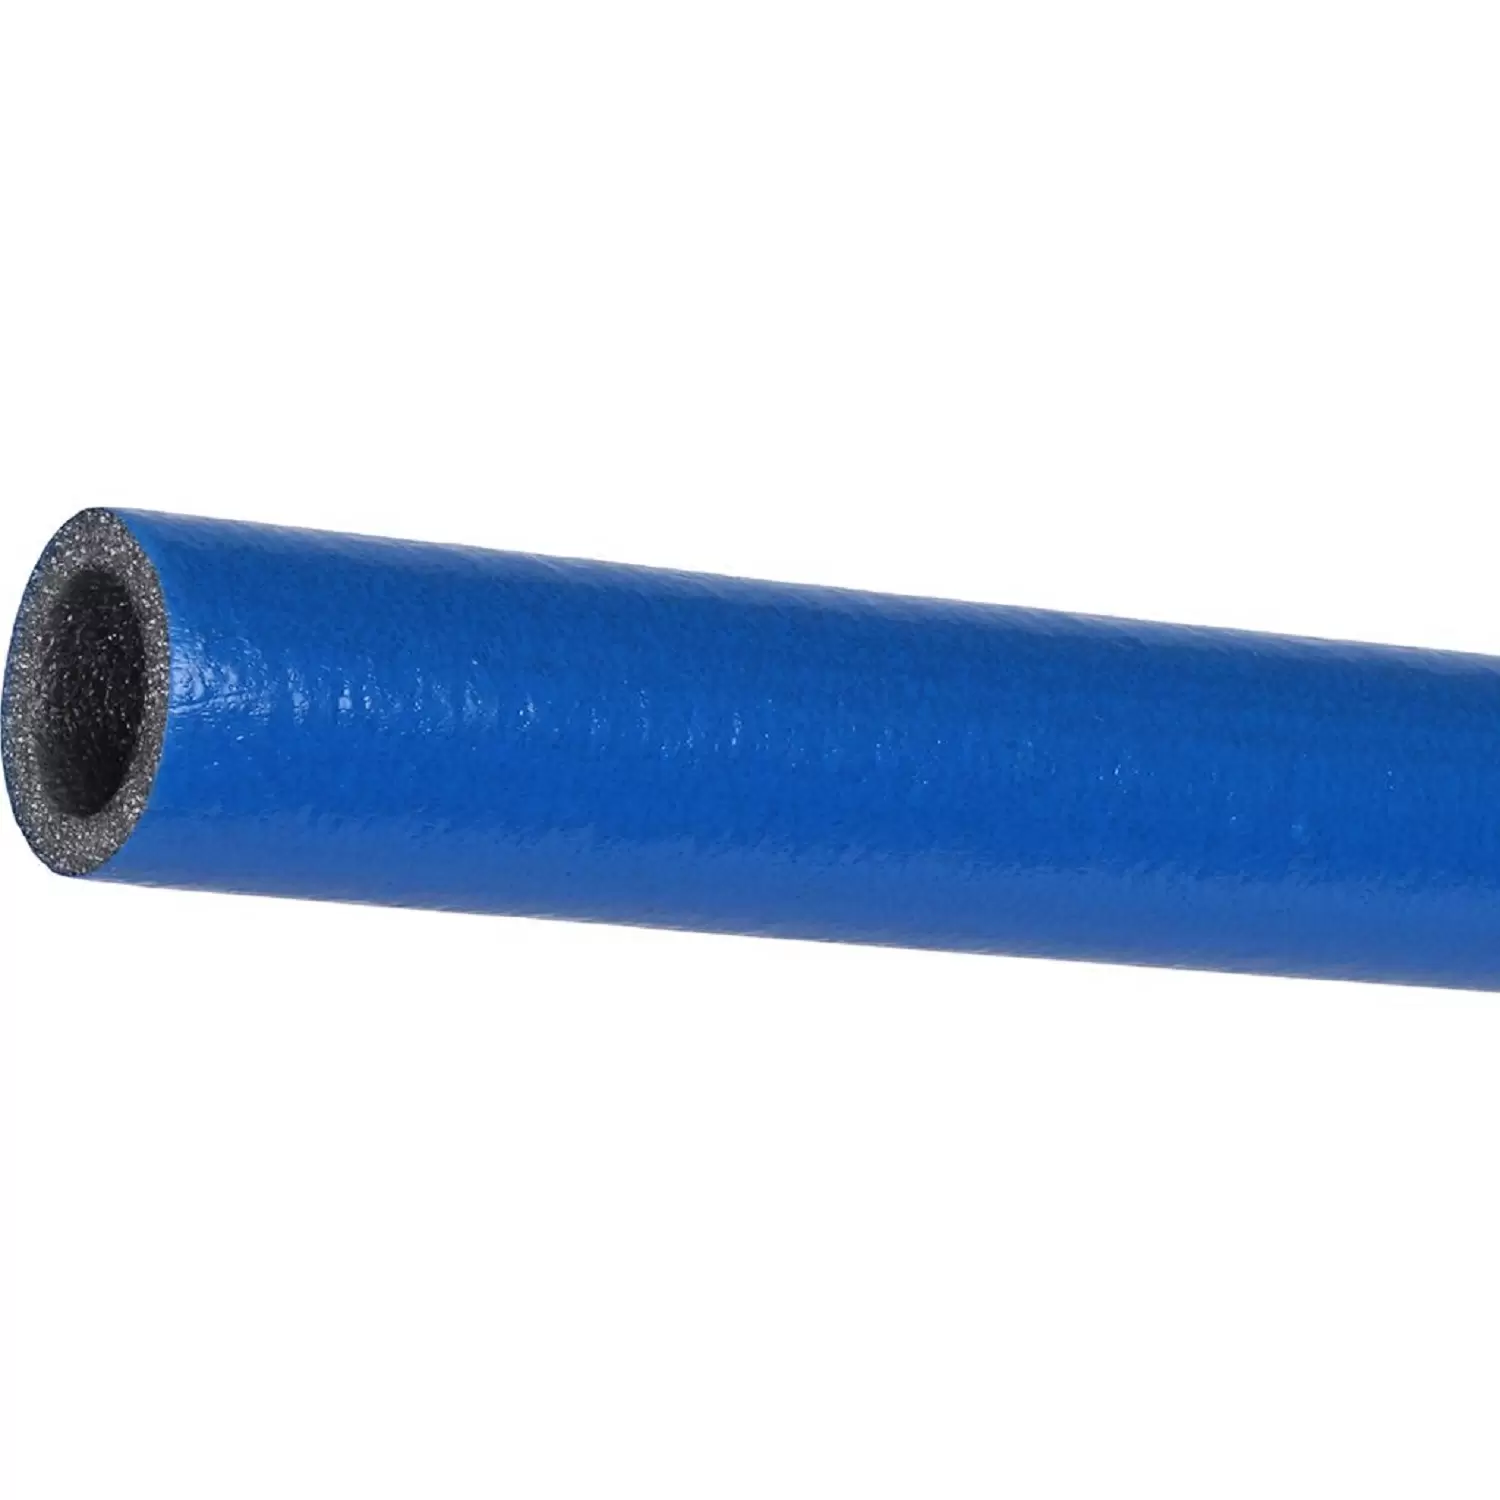 Теплоизоляция Энергофлекс супер протект 22/6 для труб диаметром 20 мм синяя, трубка 2 м